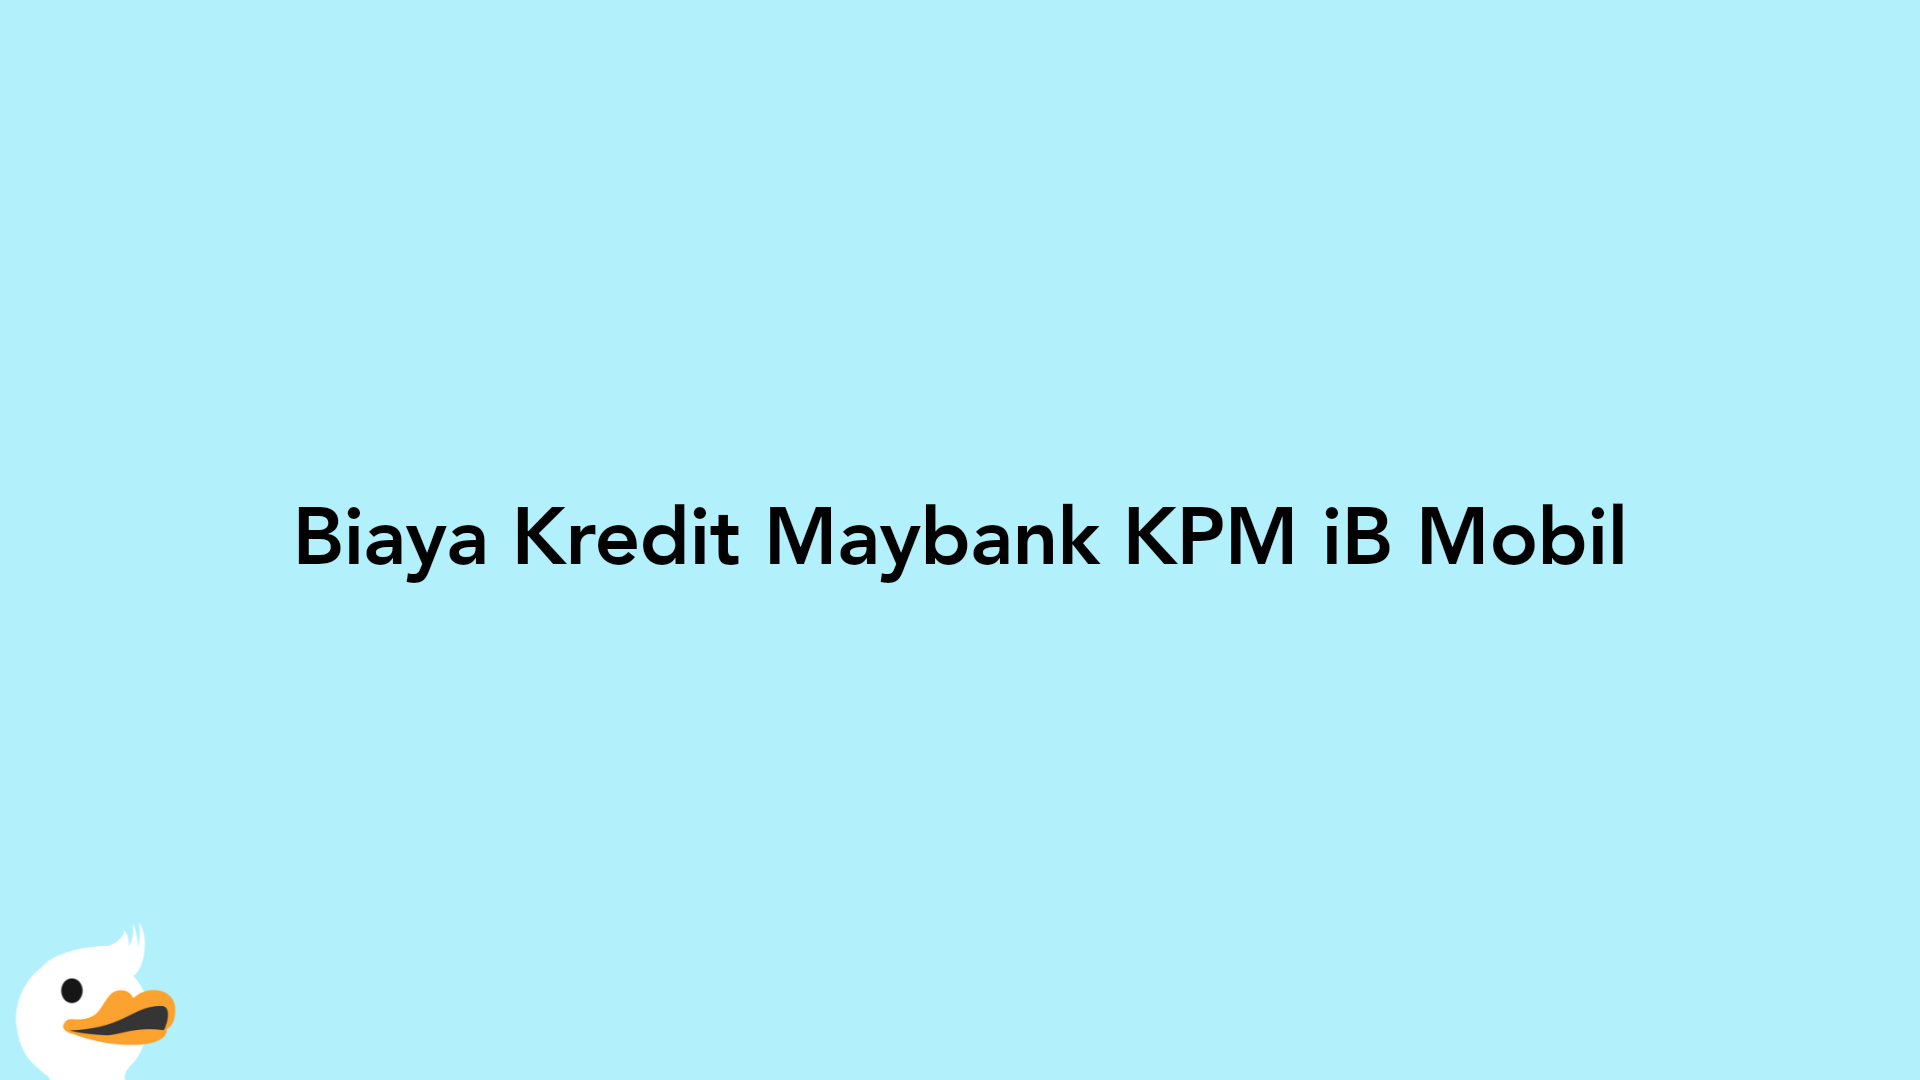 Biaya Kredit Maybank KPM iB Mobil